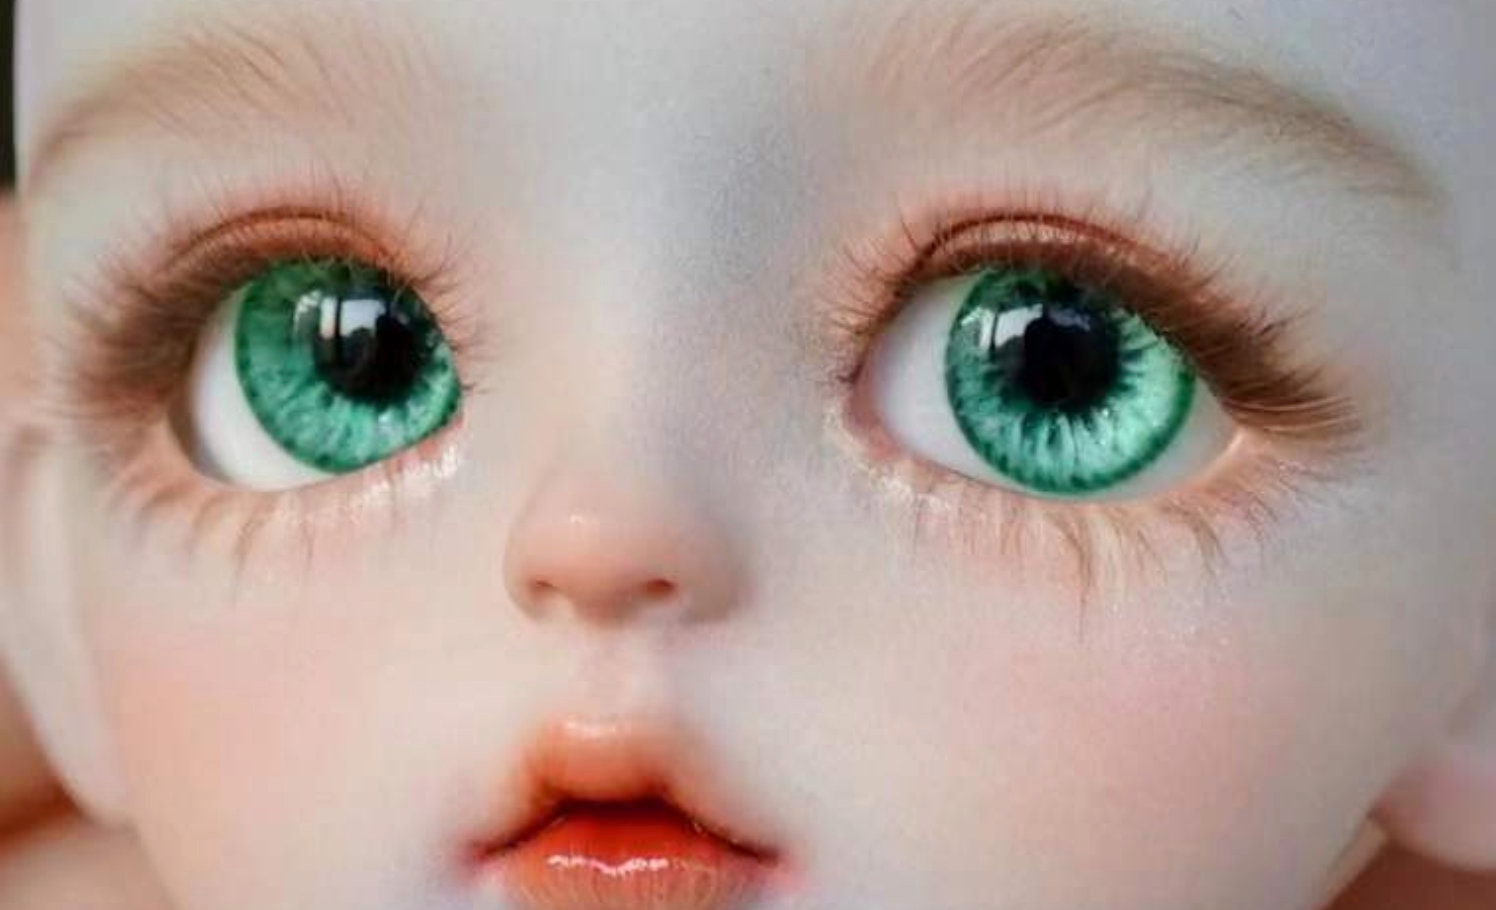 SD BJD Eyes/resin Eyes/realistic Eyes/blyth Eyes/ Eyes/safety Eyes/doll Eyes  8mm 10mm 12mm 14mm 16mm 18mm 24mm 30mm 